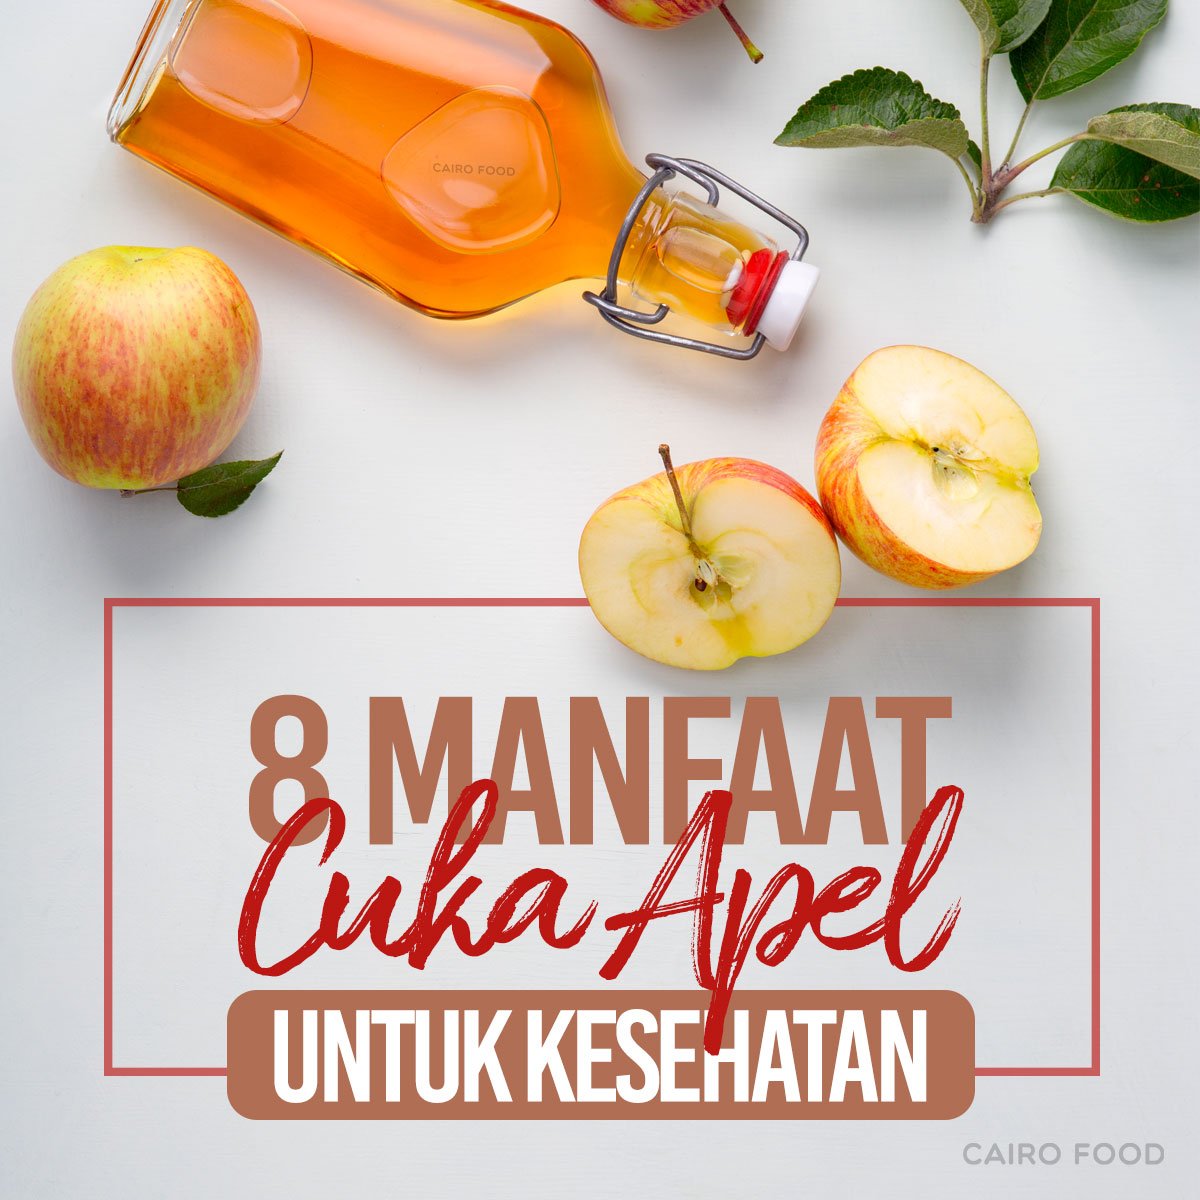 8 manfaat cuka apel untuk kesehatan